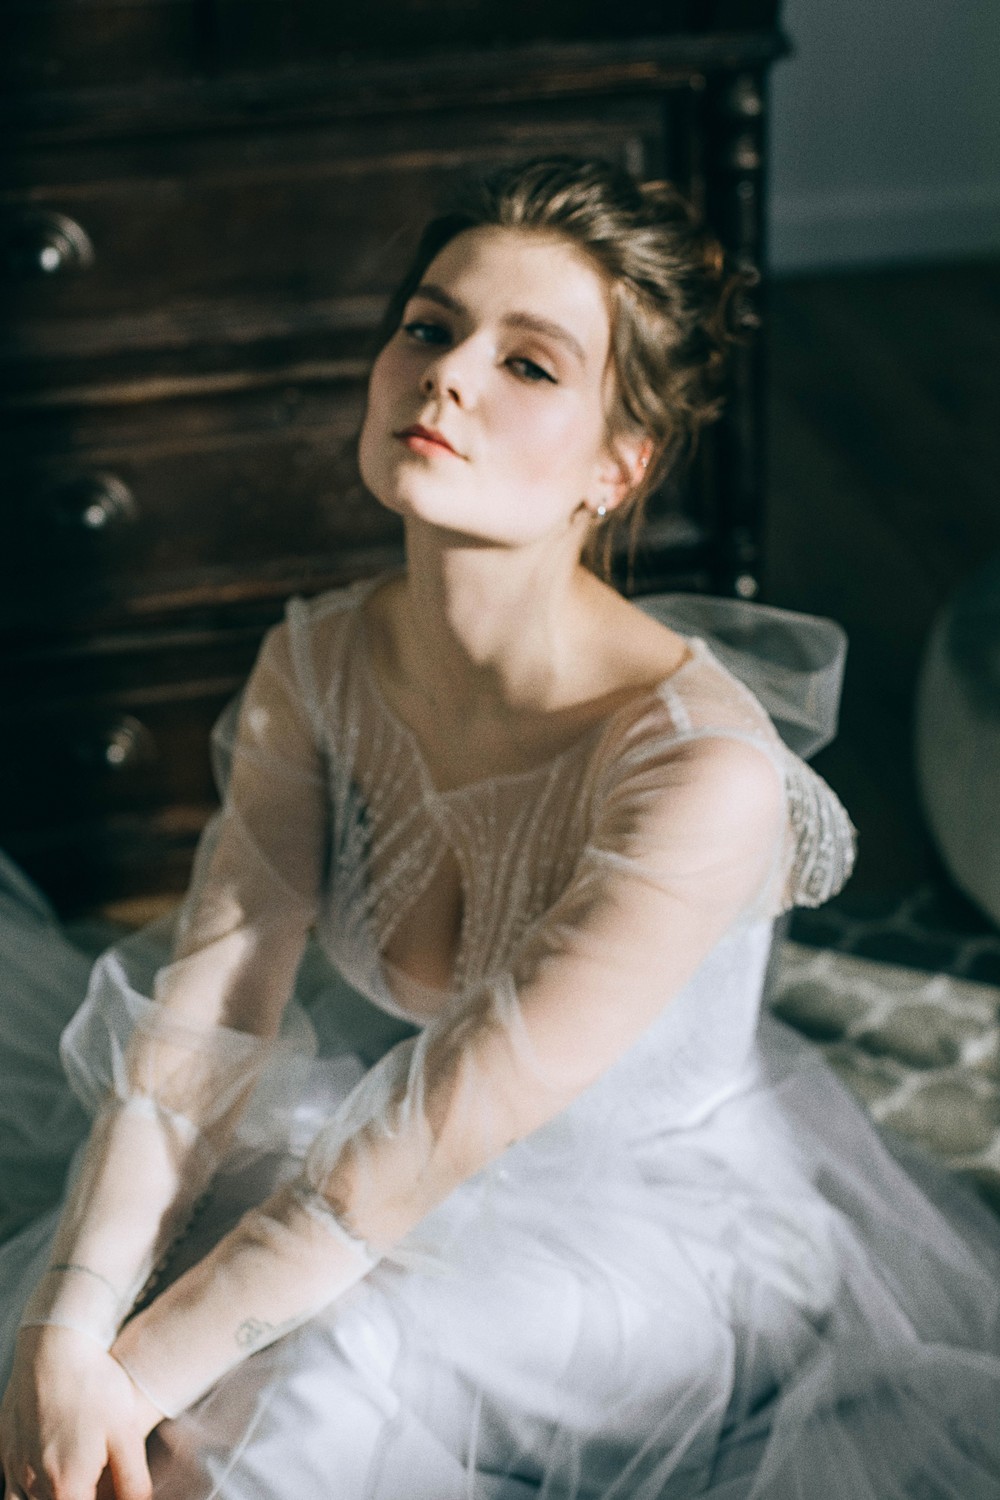 Макияж - Свадебный макияж - Примеры свадебного макияжа от визажиста Марии Красковской